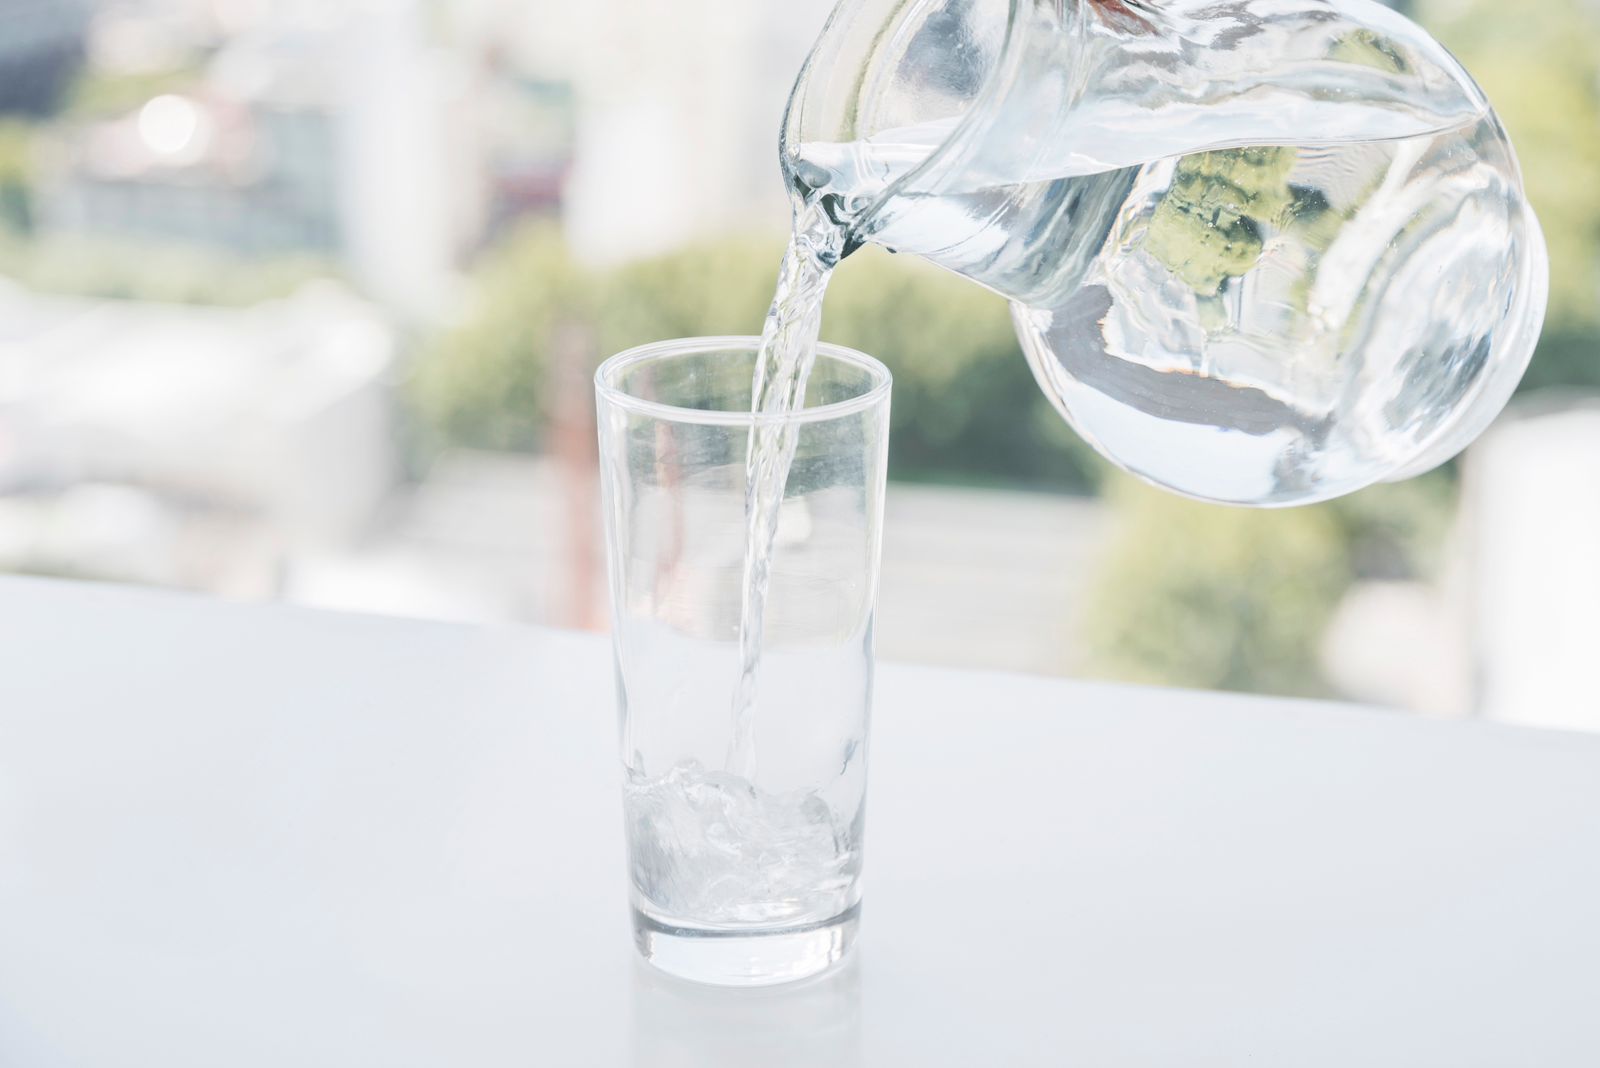 Minum Air Hangat vs Air Dingin, Mana yang Lebih Sehat?